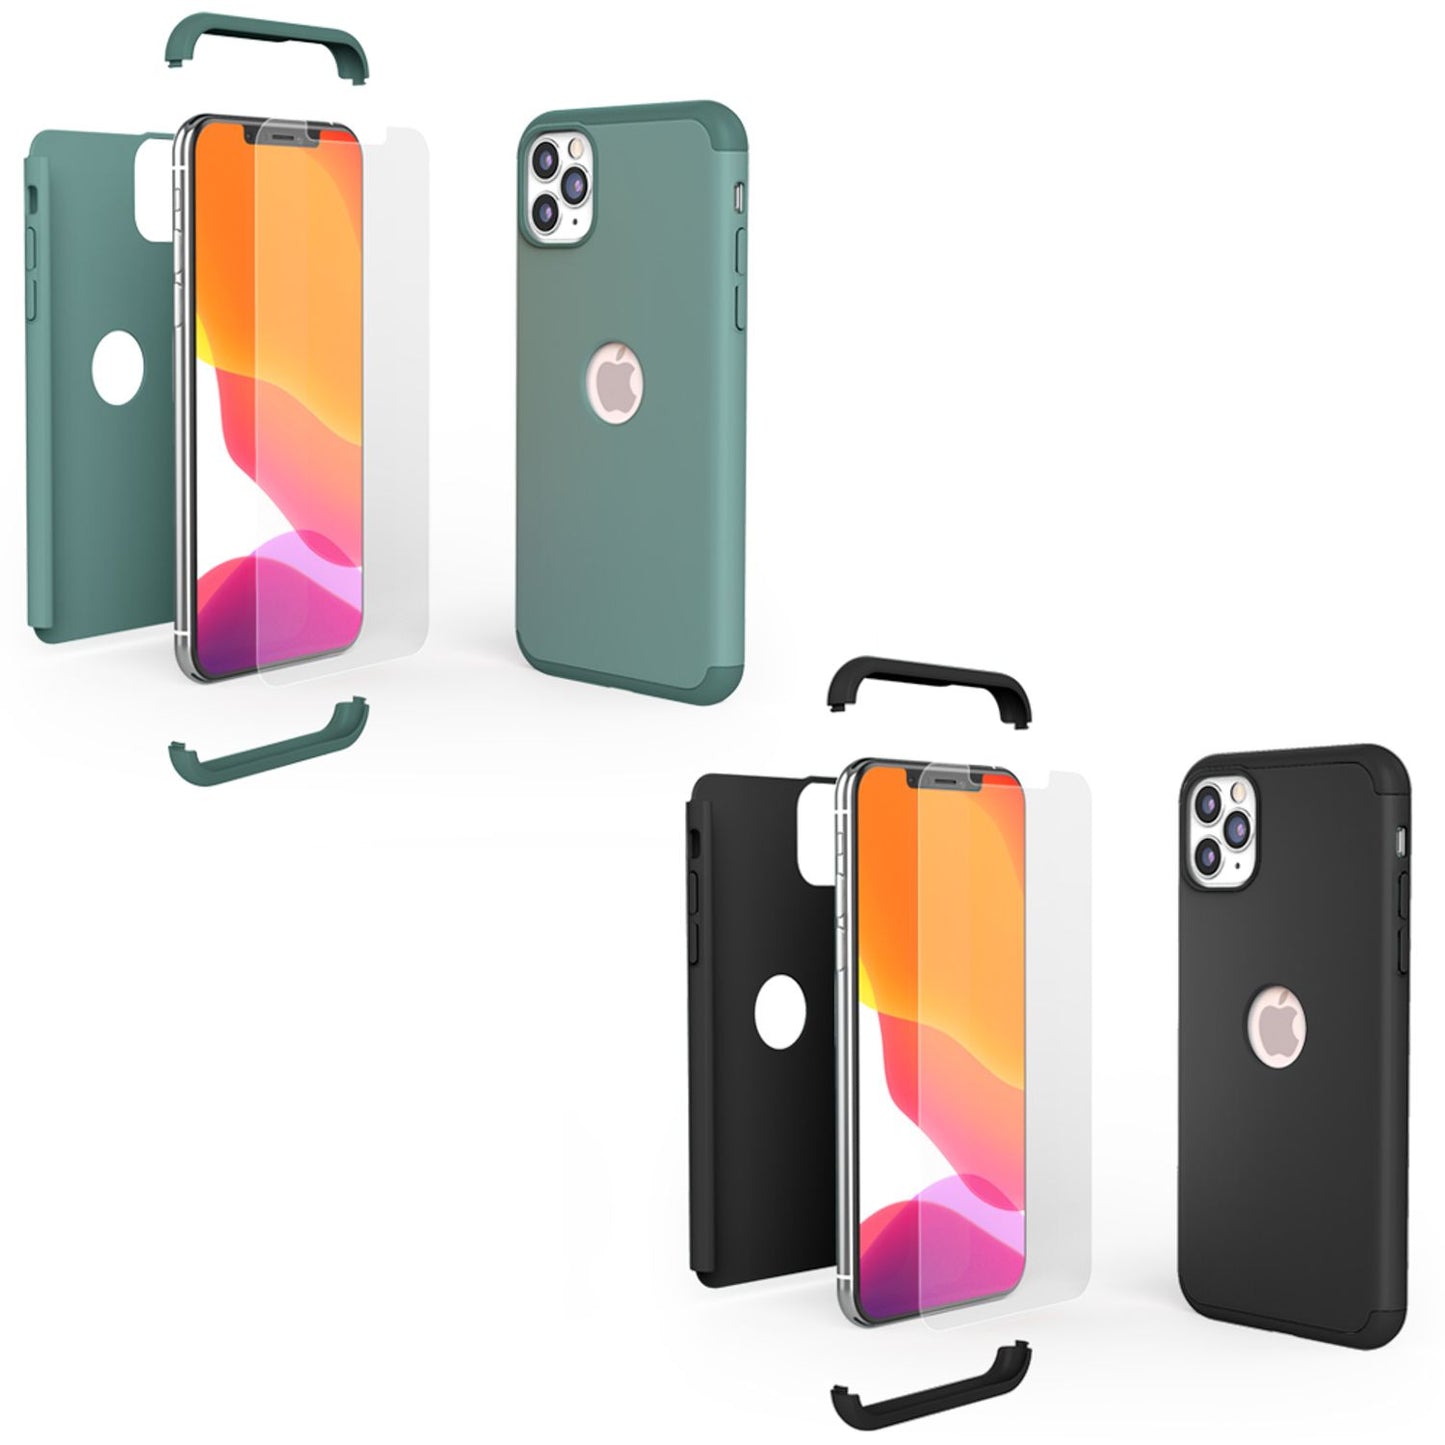 NALIA 360 Grad Handy Hülle für iPhone 11 Pro Max, Full Cover Hard Case & Glas